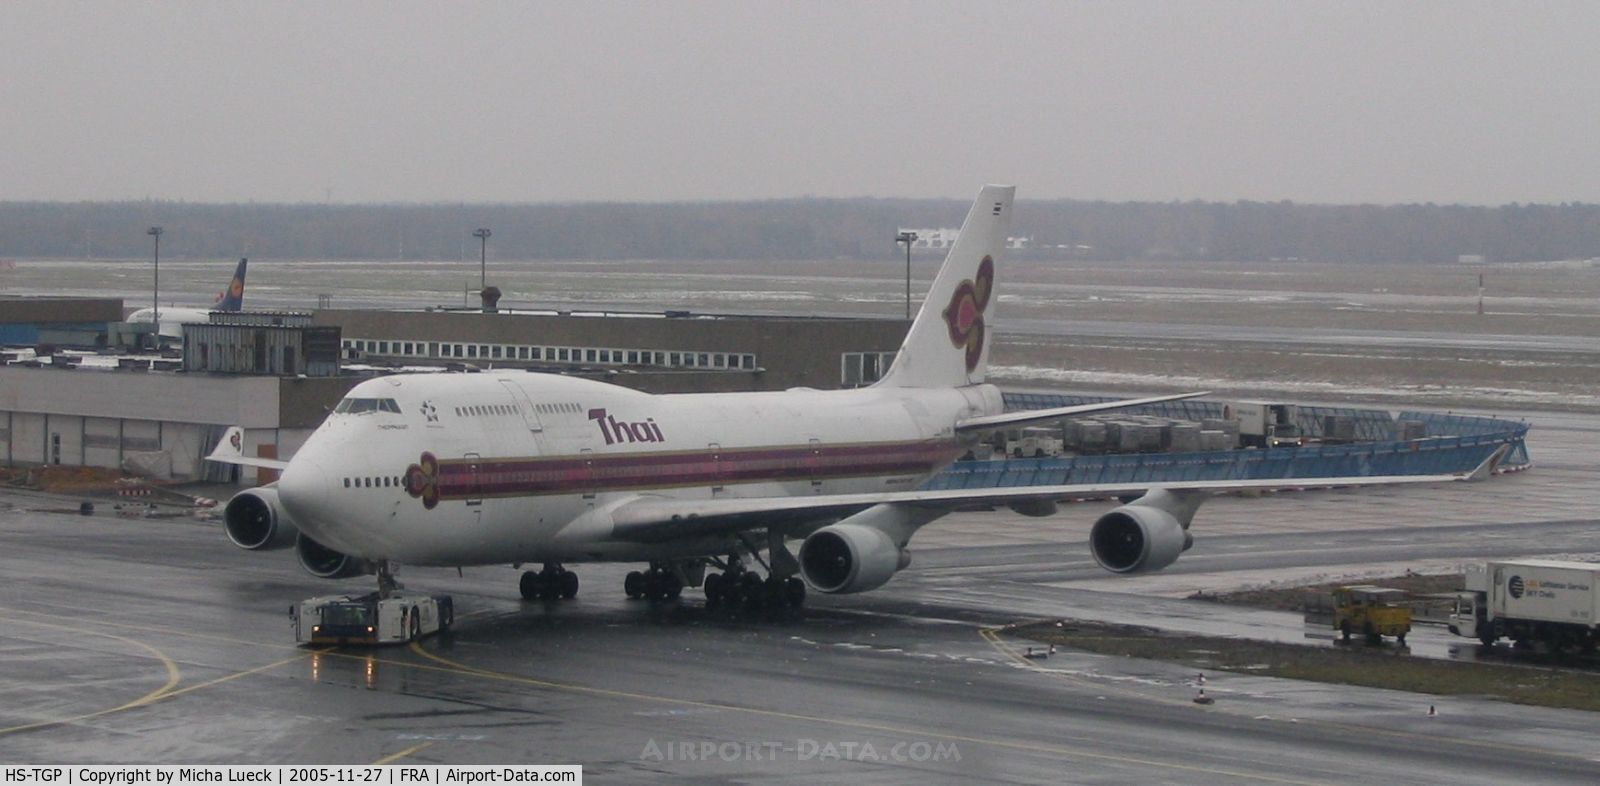 HS-TGP, 1994 Boeing 747-4D7 C/N 26610, HS-TGP being towed to the gate